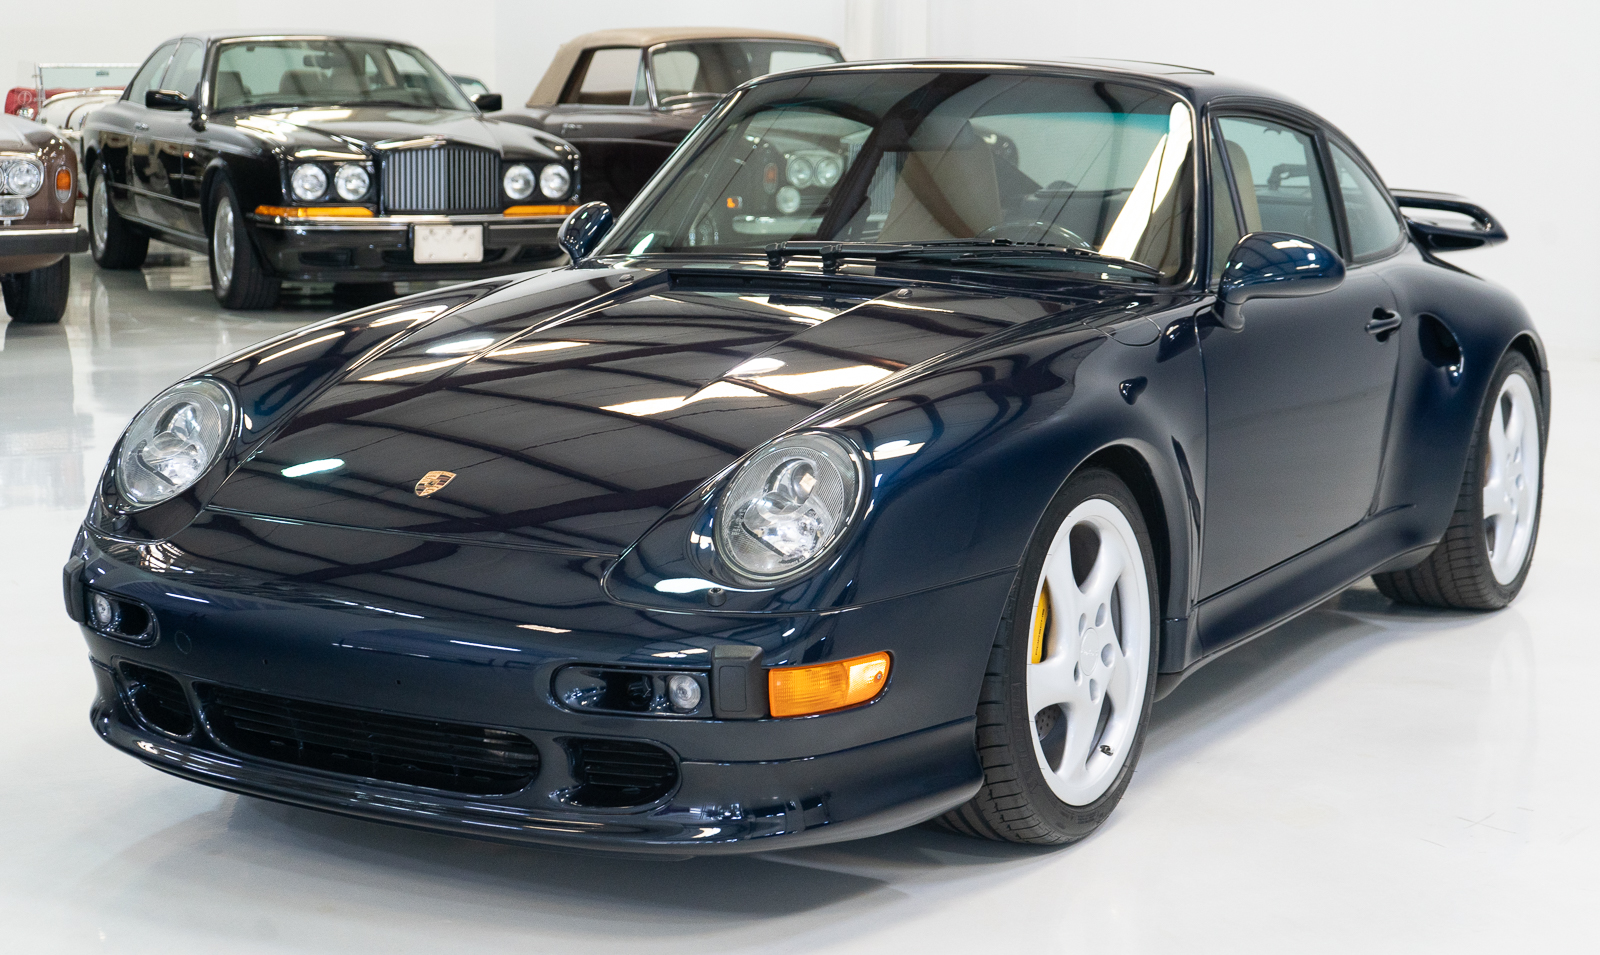 PHOTOS - Cette rare Porsche 911 Turbo S de 1997 vaut une petite fortune